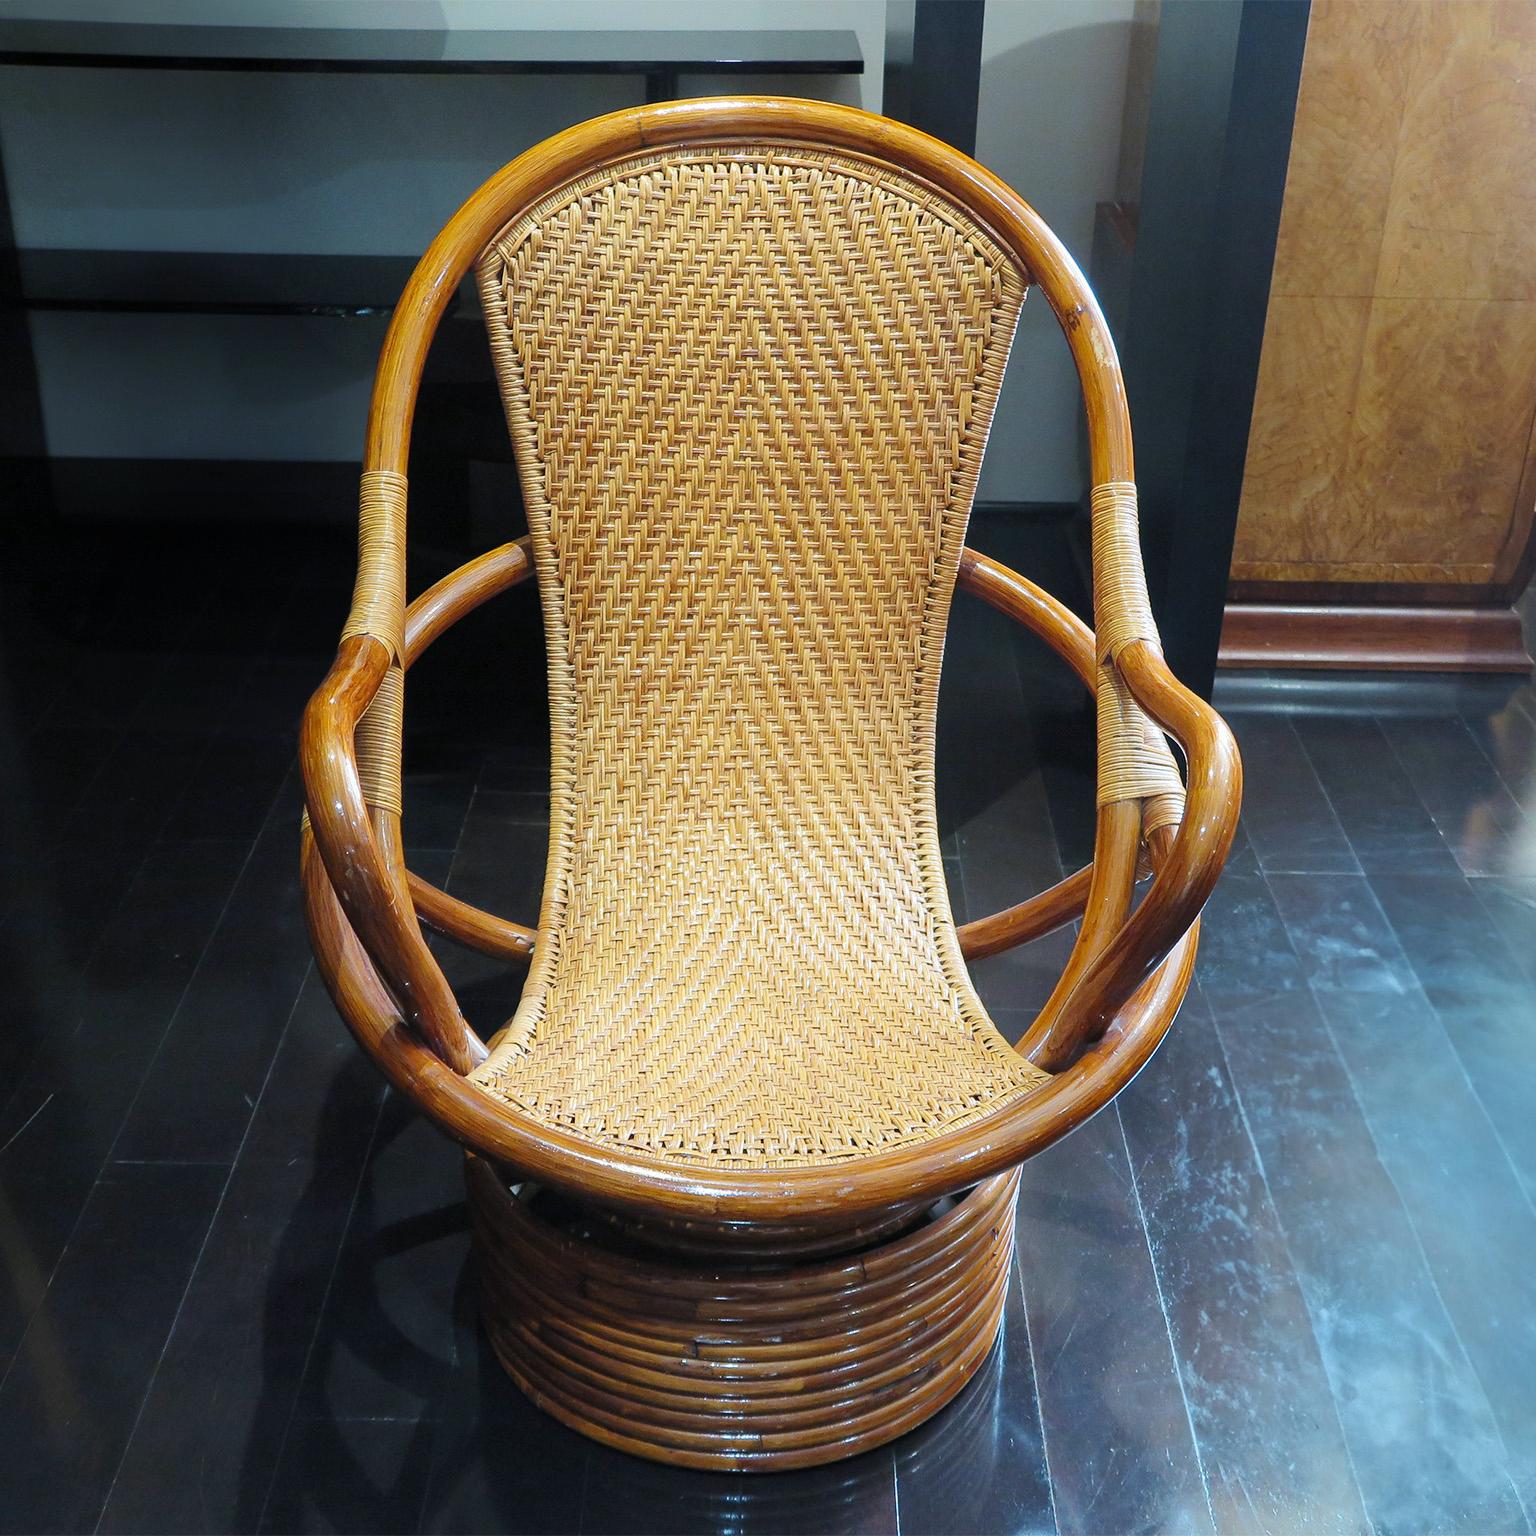 Paar Rattanstühle des späten 20. Jahrhunderts.  Diese Stühle bestehen aus einem geschwungenen Bambusrahmen mit glänzender Oberfläche und einer Sitzfläche und Rückenlehne aus Rattan.  Der Sockel verfügt über eine Drehfunktion.  Toller